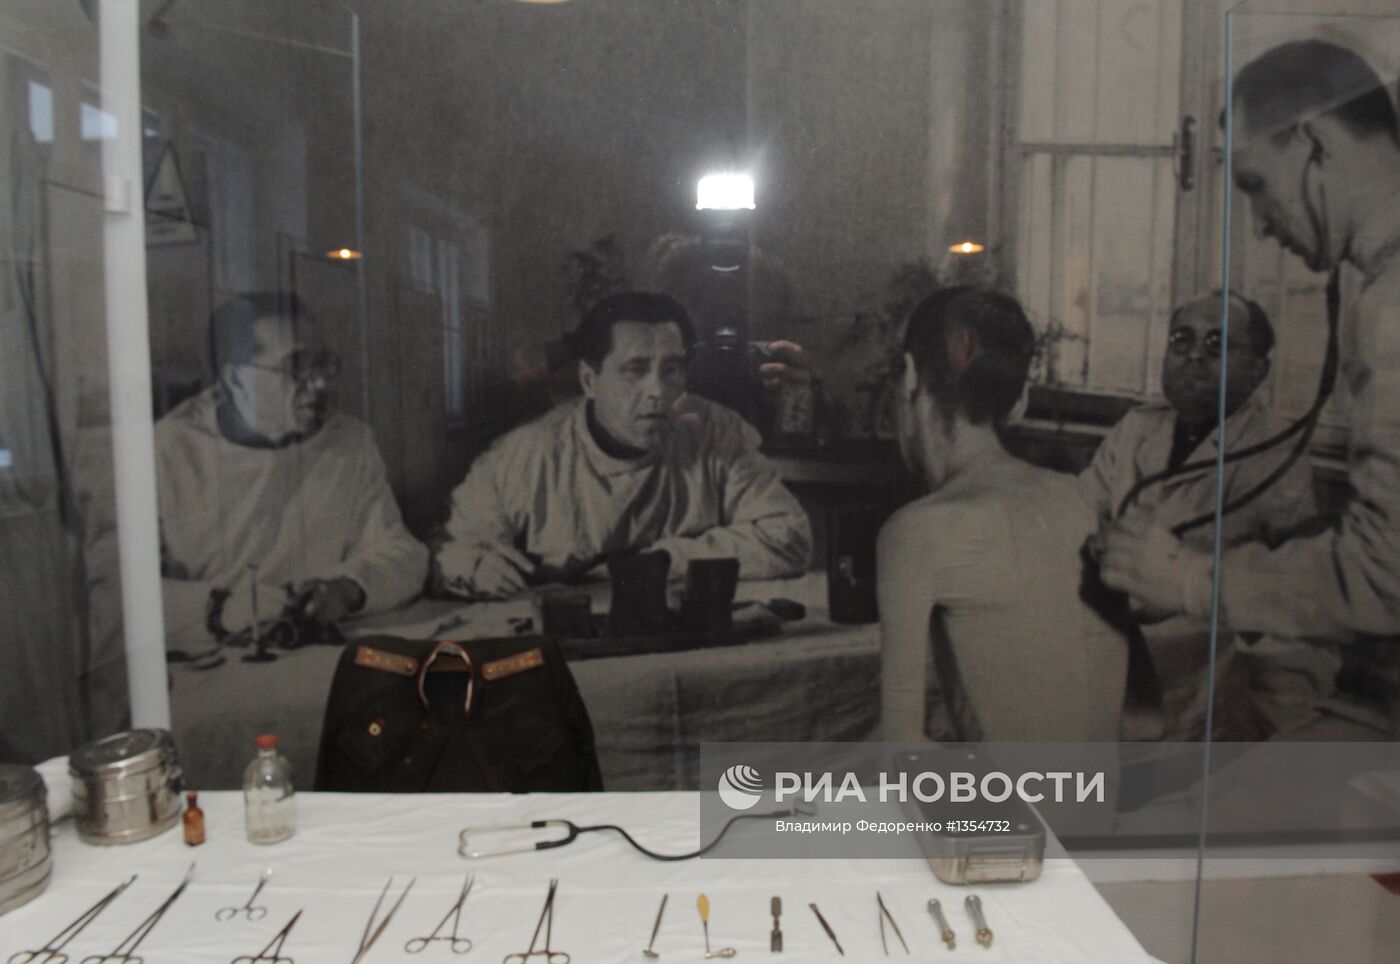 Открытие обновленной российской экспозиции в музее Освенцима